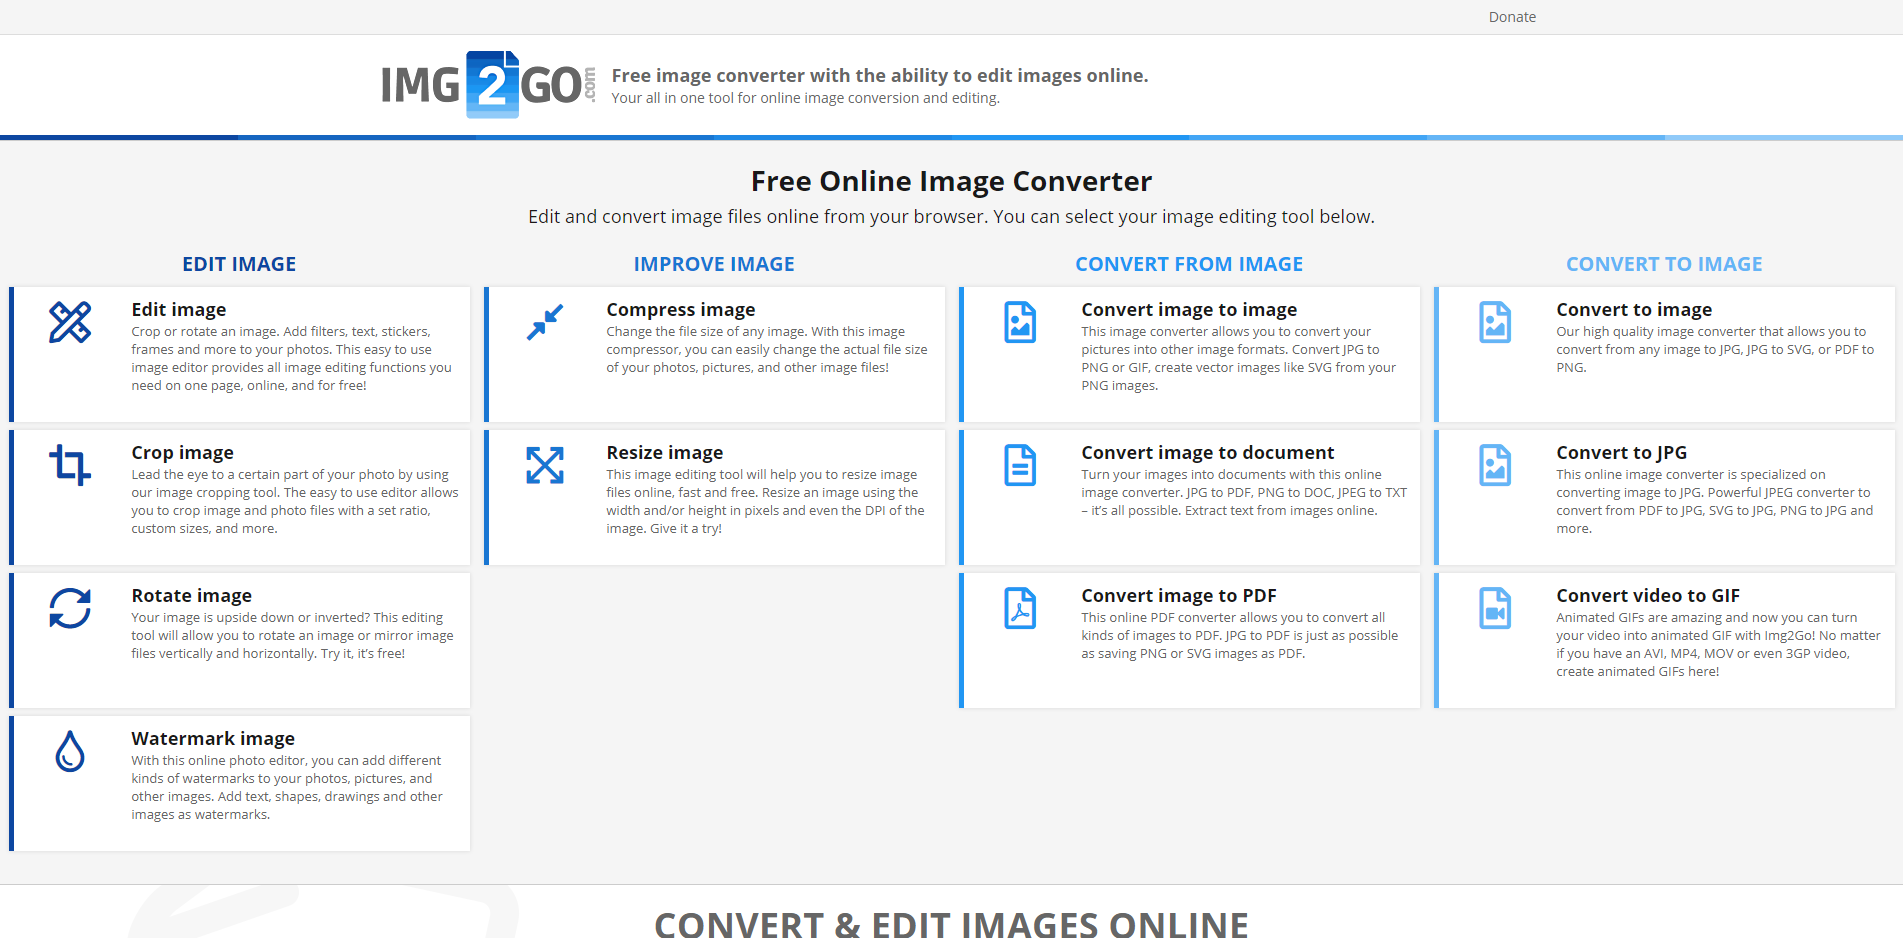 Cambia el tamaño de archivos de imagen en línea - Este editor permite cambiar el tamaño de las imágenes